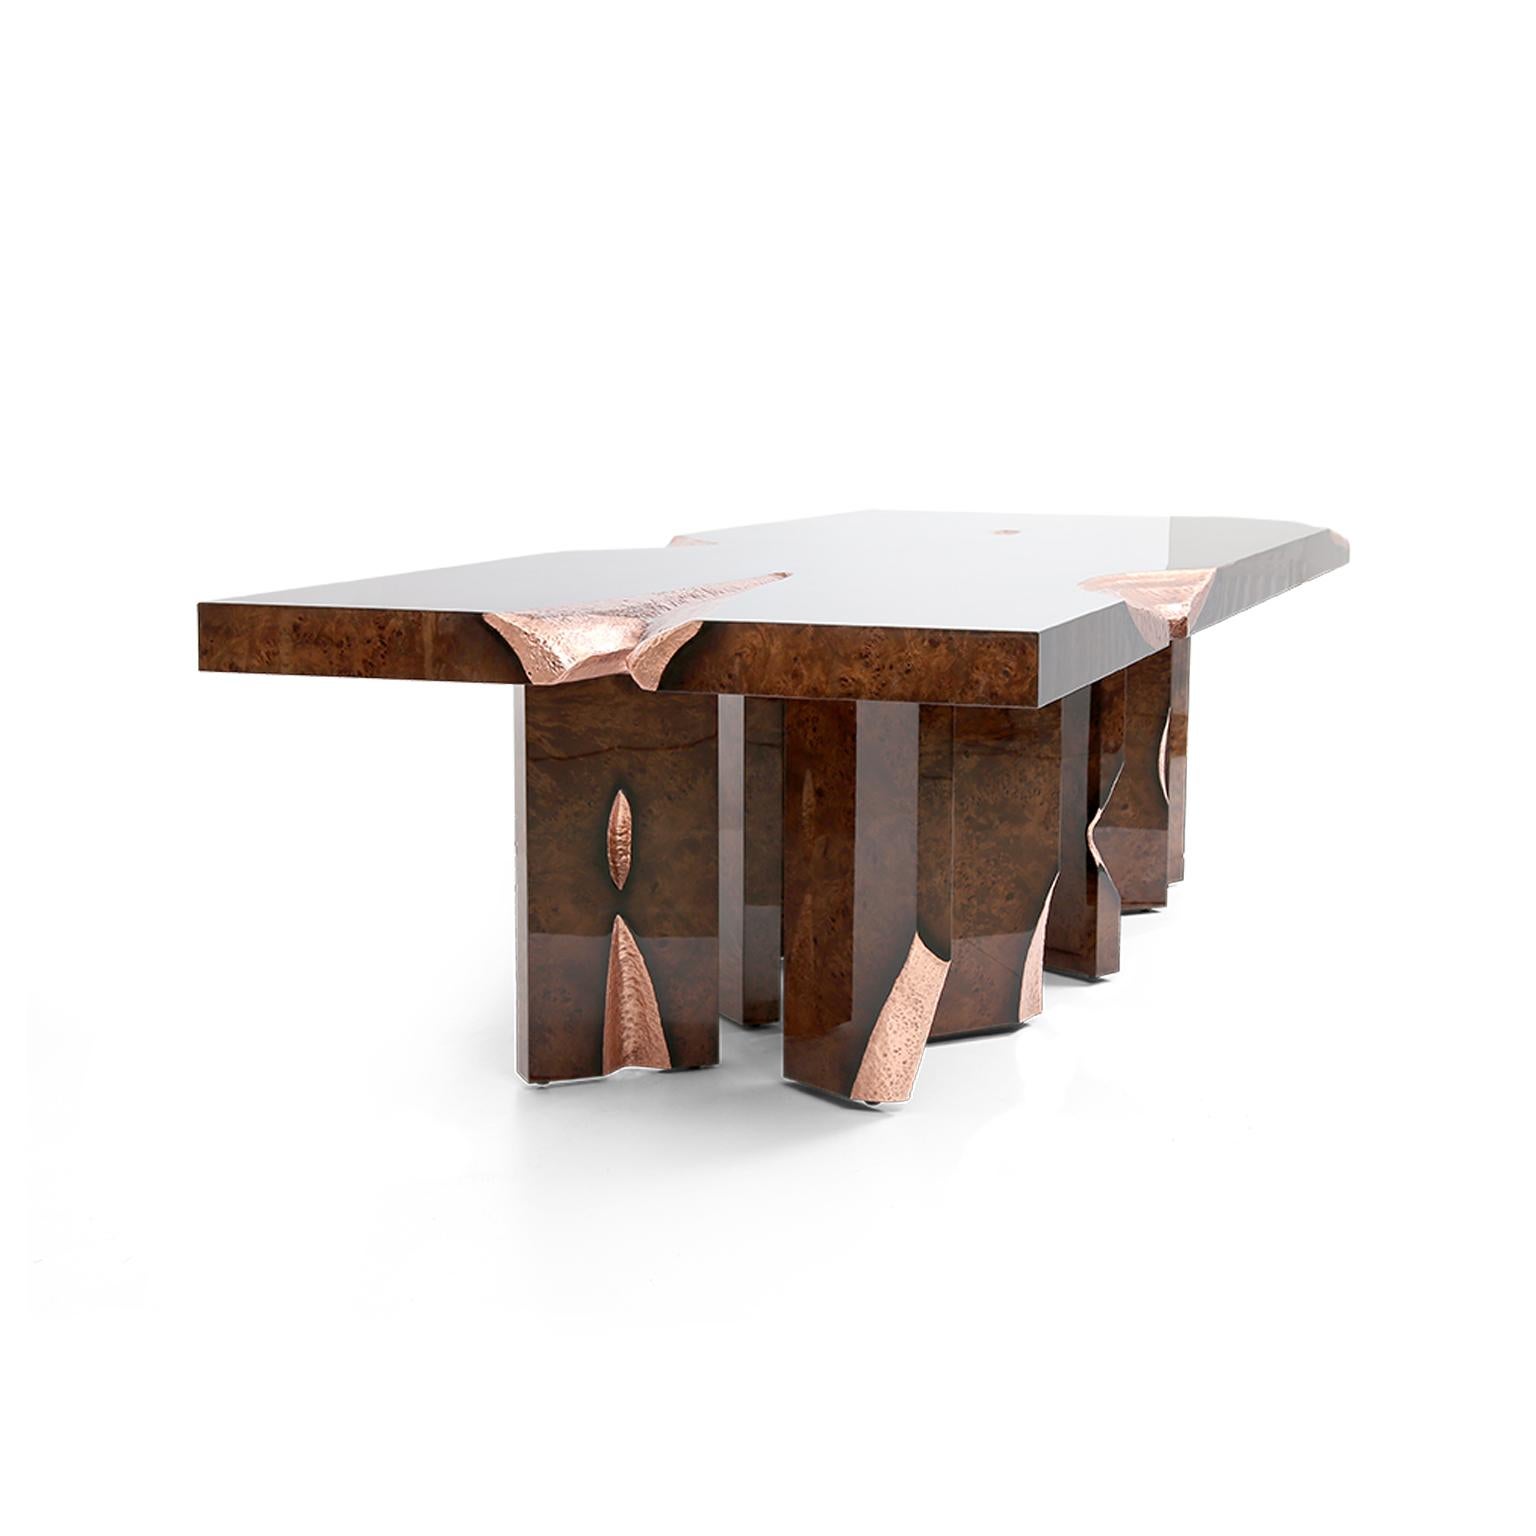 Dieser kunstvoll gefertigte Tisch, der durch sein Zusammenspiel von Formen und Proportionen besticht, ist ein Markenzeichen für hervorragende Handwerkskunst und innovatives Design. Der Stil dieses exklusiven Tisches hebt sich von allen Klischees ab.